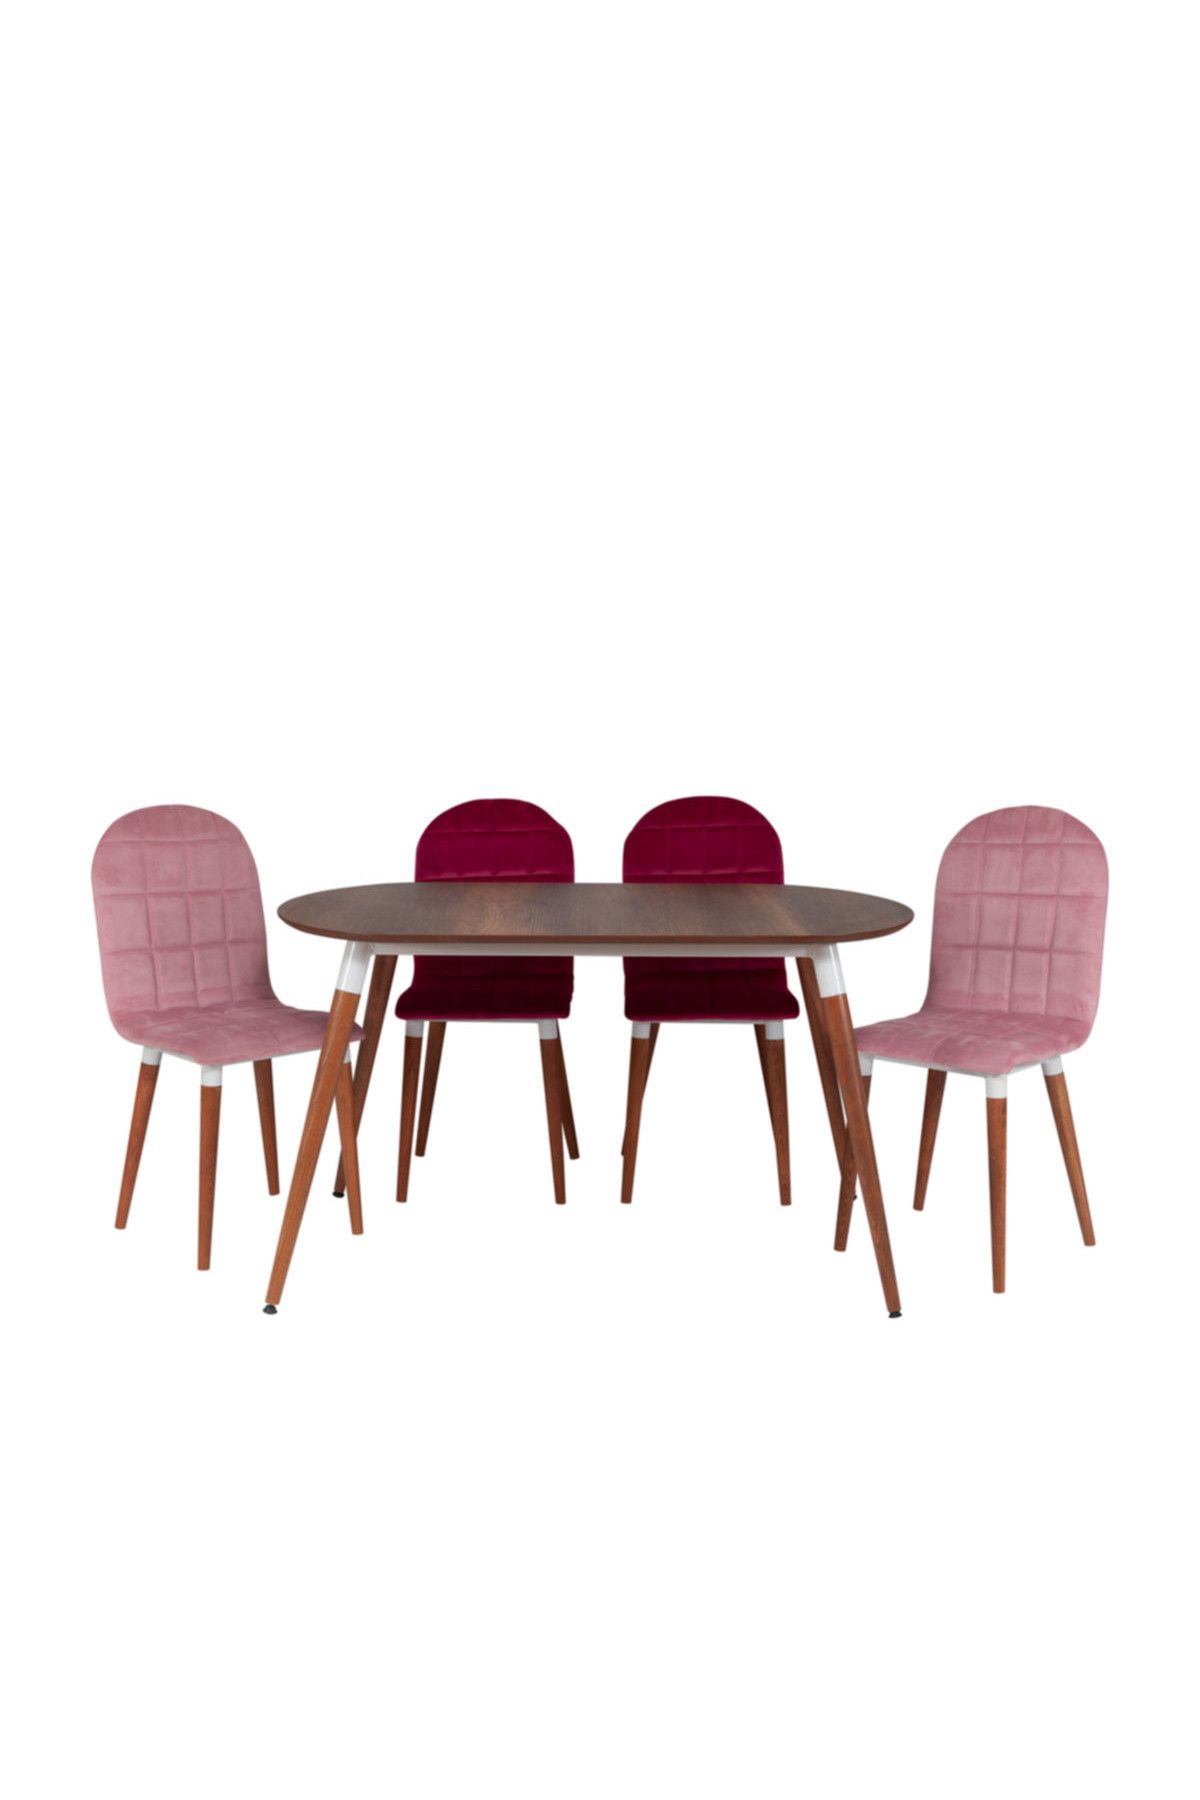 Riş Mobilya Oval Masa Sandalye Takımı , Mutfak Masası